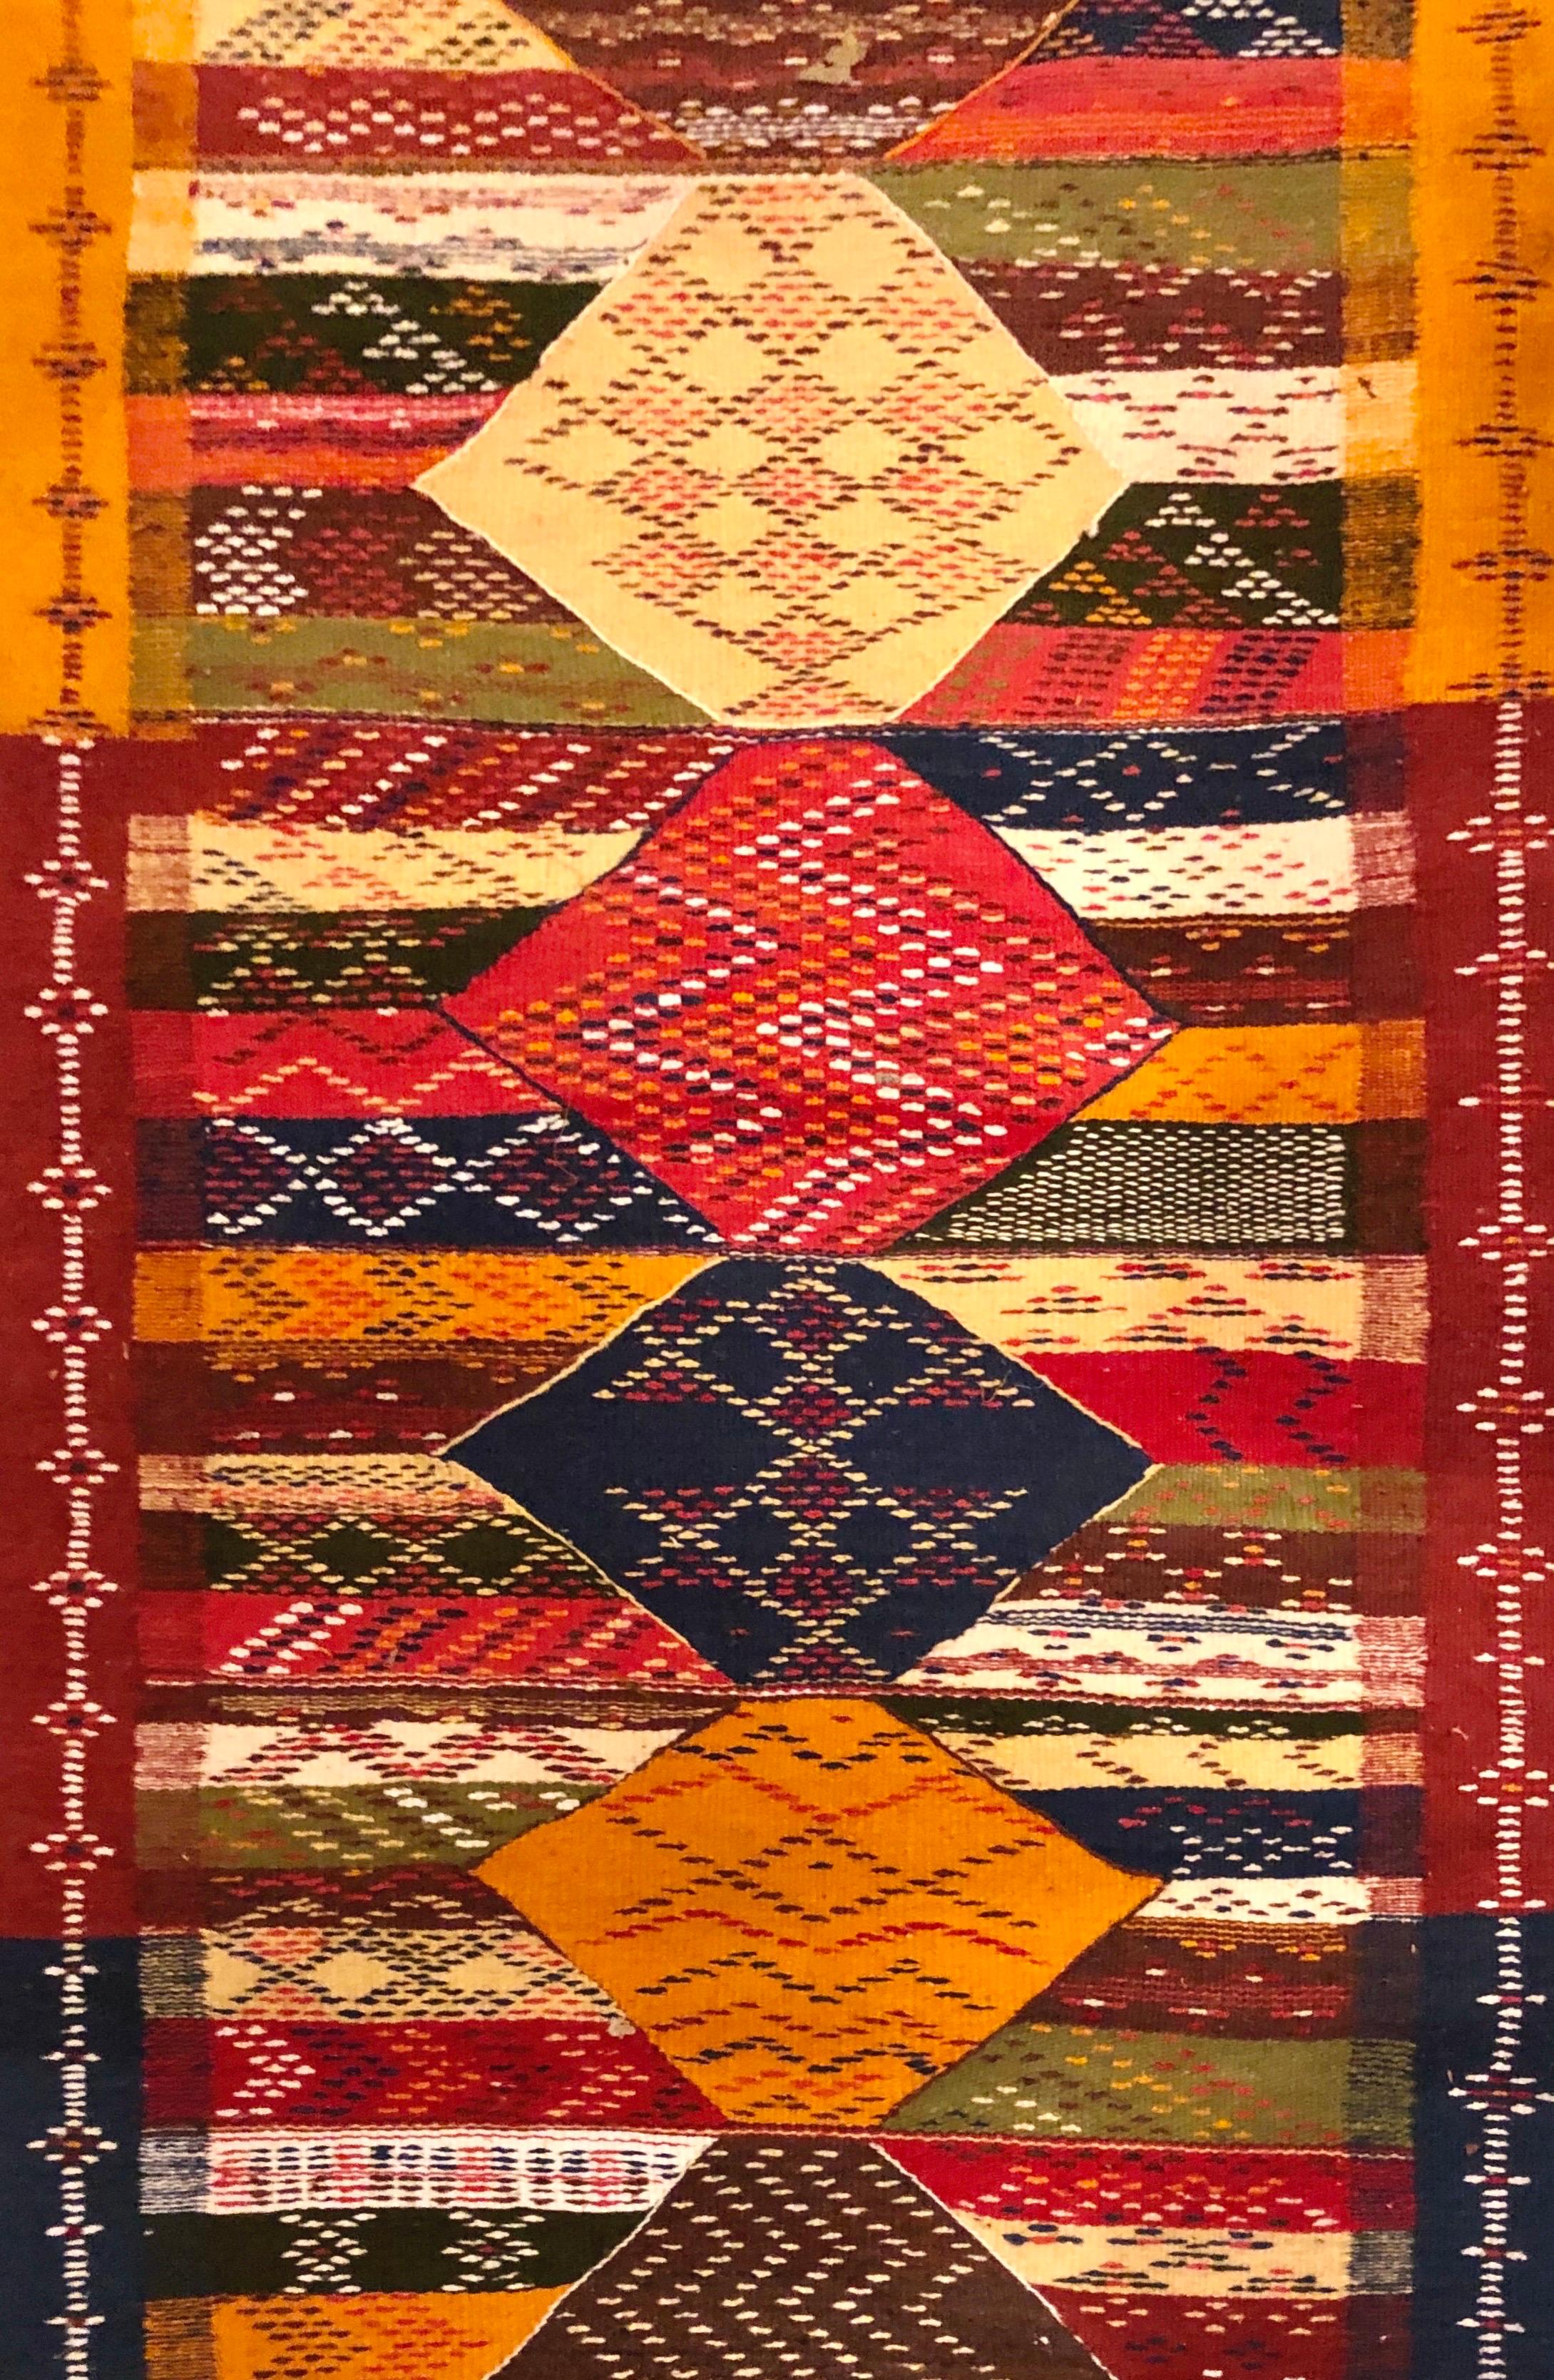 
Un tapis de course marocain Boho Chic intemporel avec des formes en diamant et des couleurs terreuses profondes. Présentant un mélange étonnant de patchwork et de motifs géométriques, le chemin de table / tapis est tissé à la main dans le style